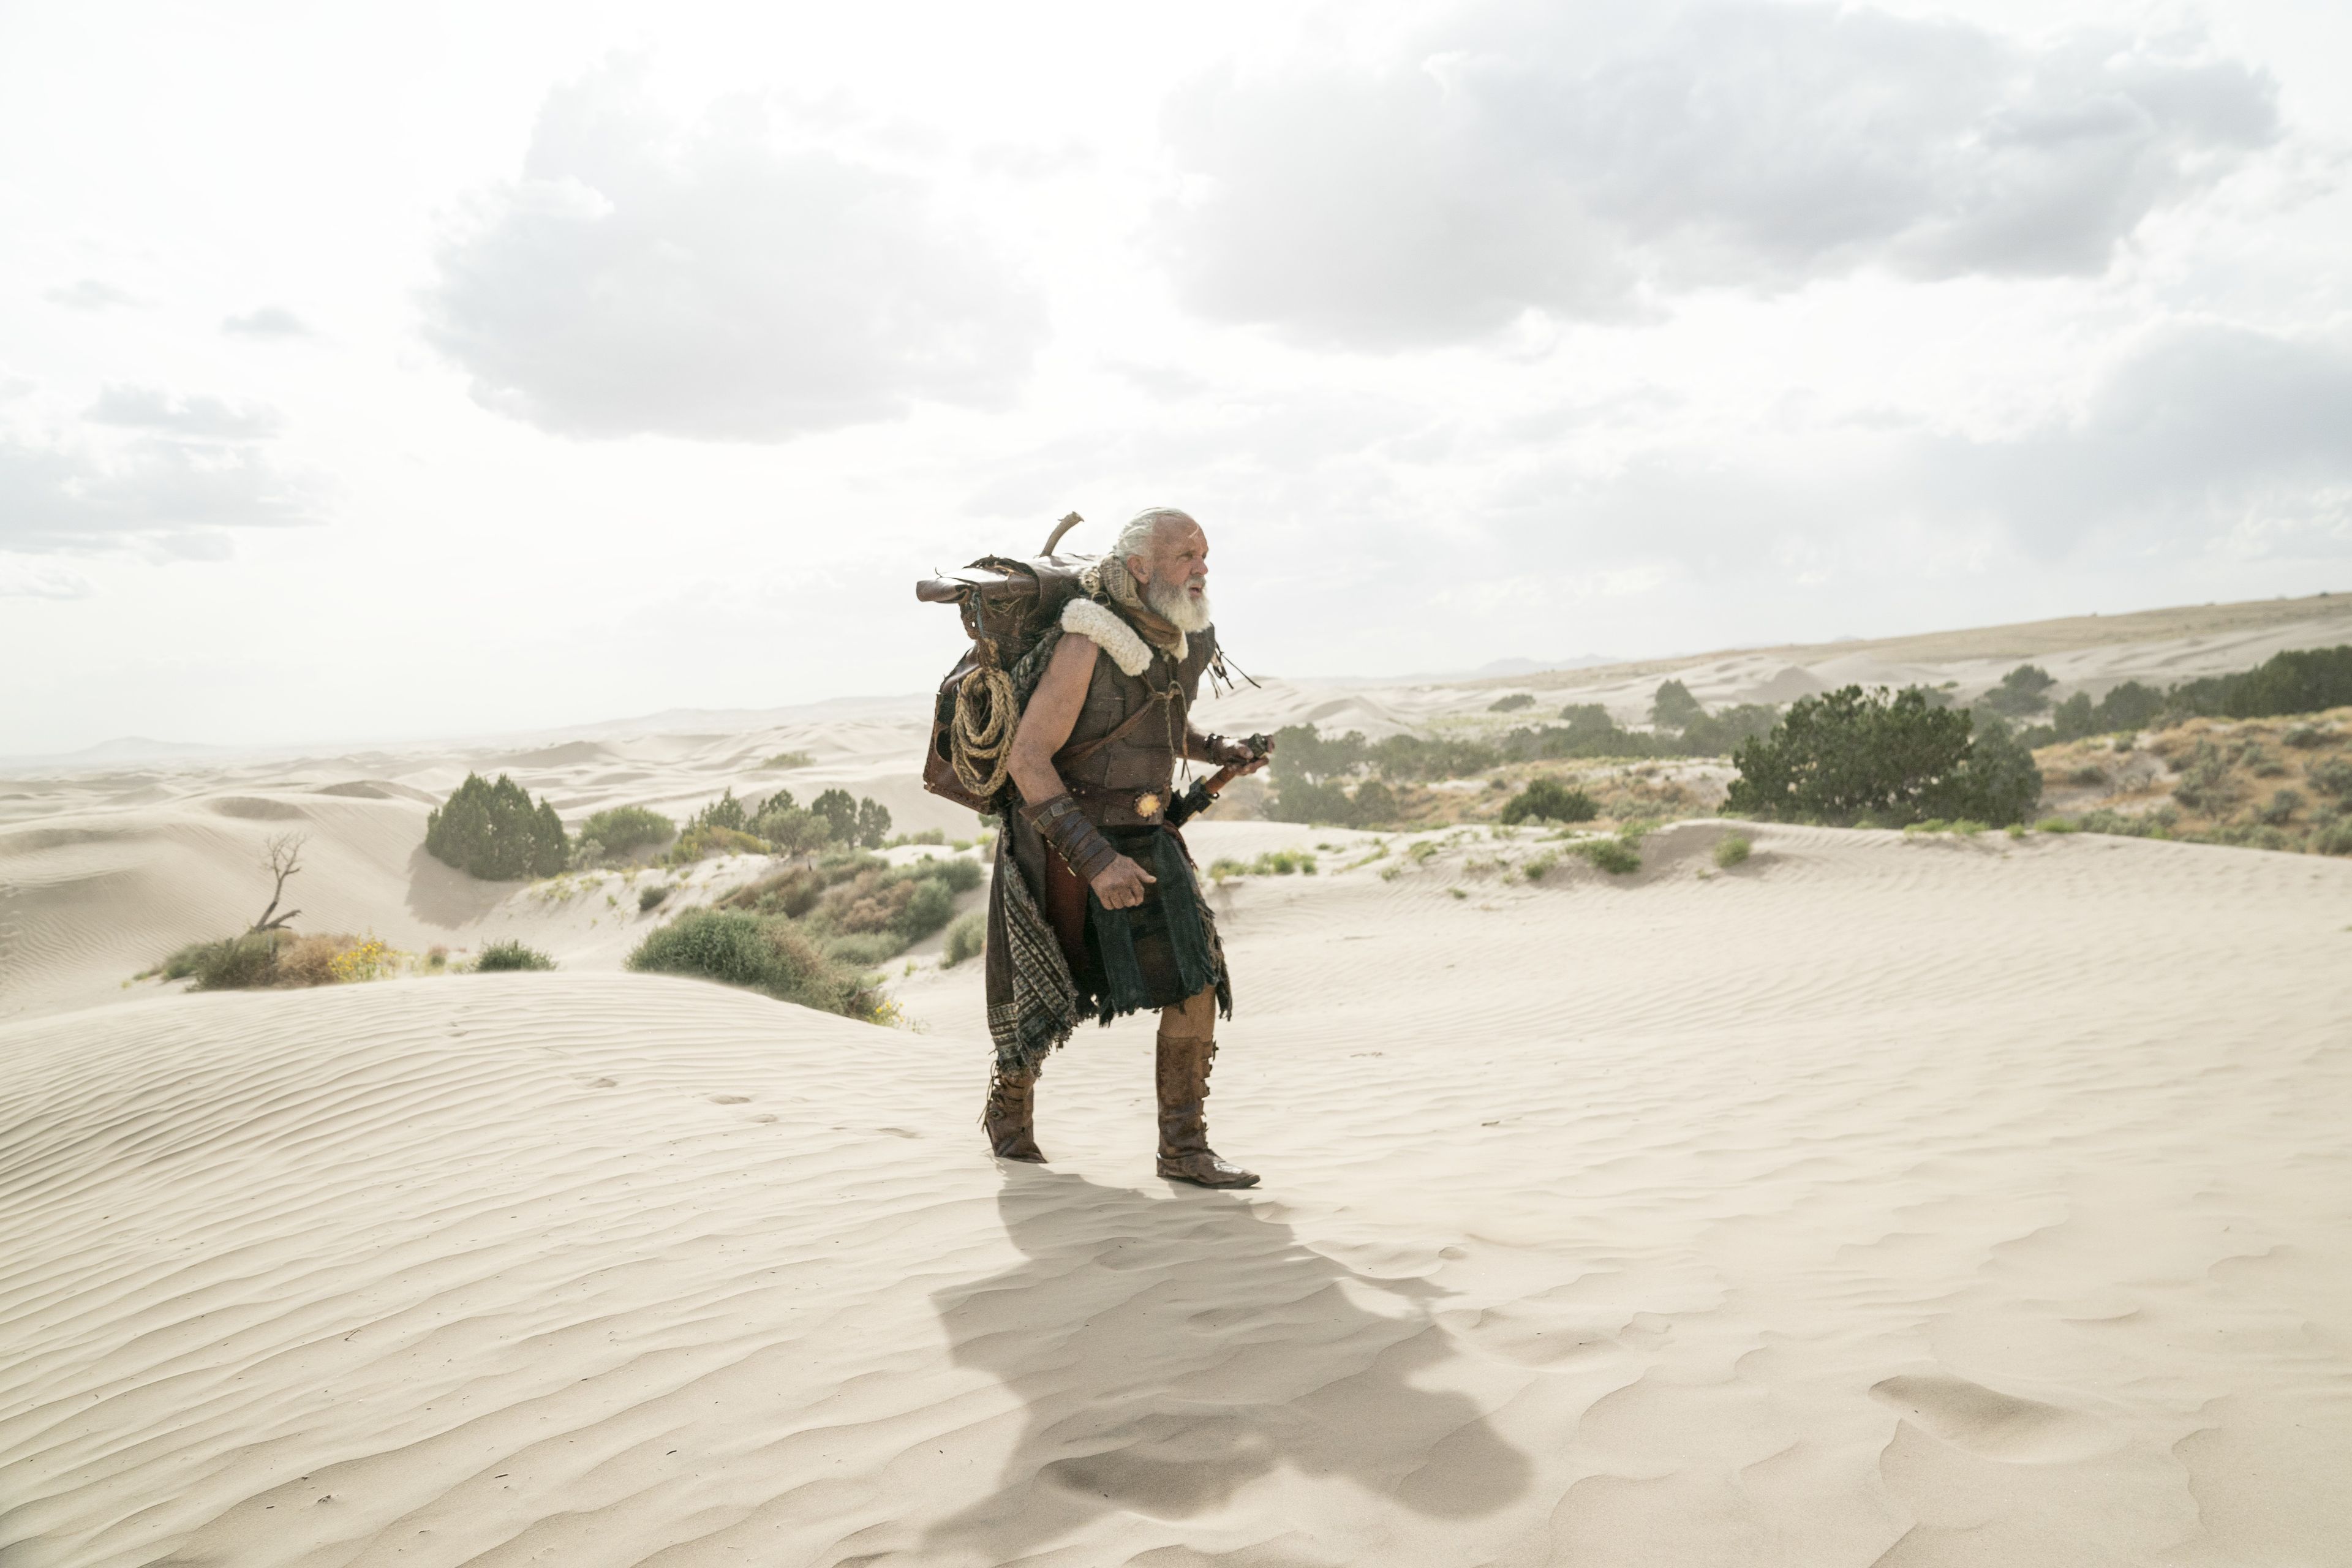 Moroni, son of Mormon, travels through the desert.